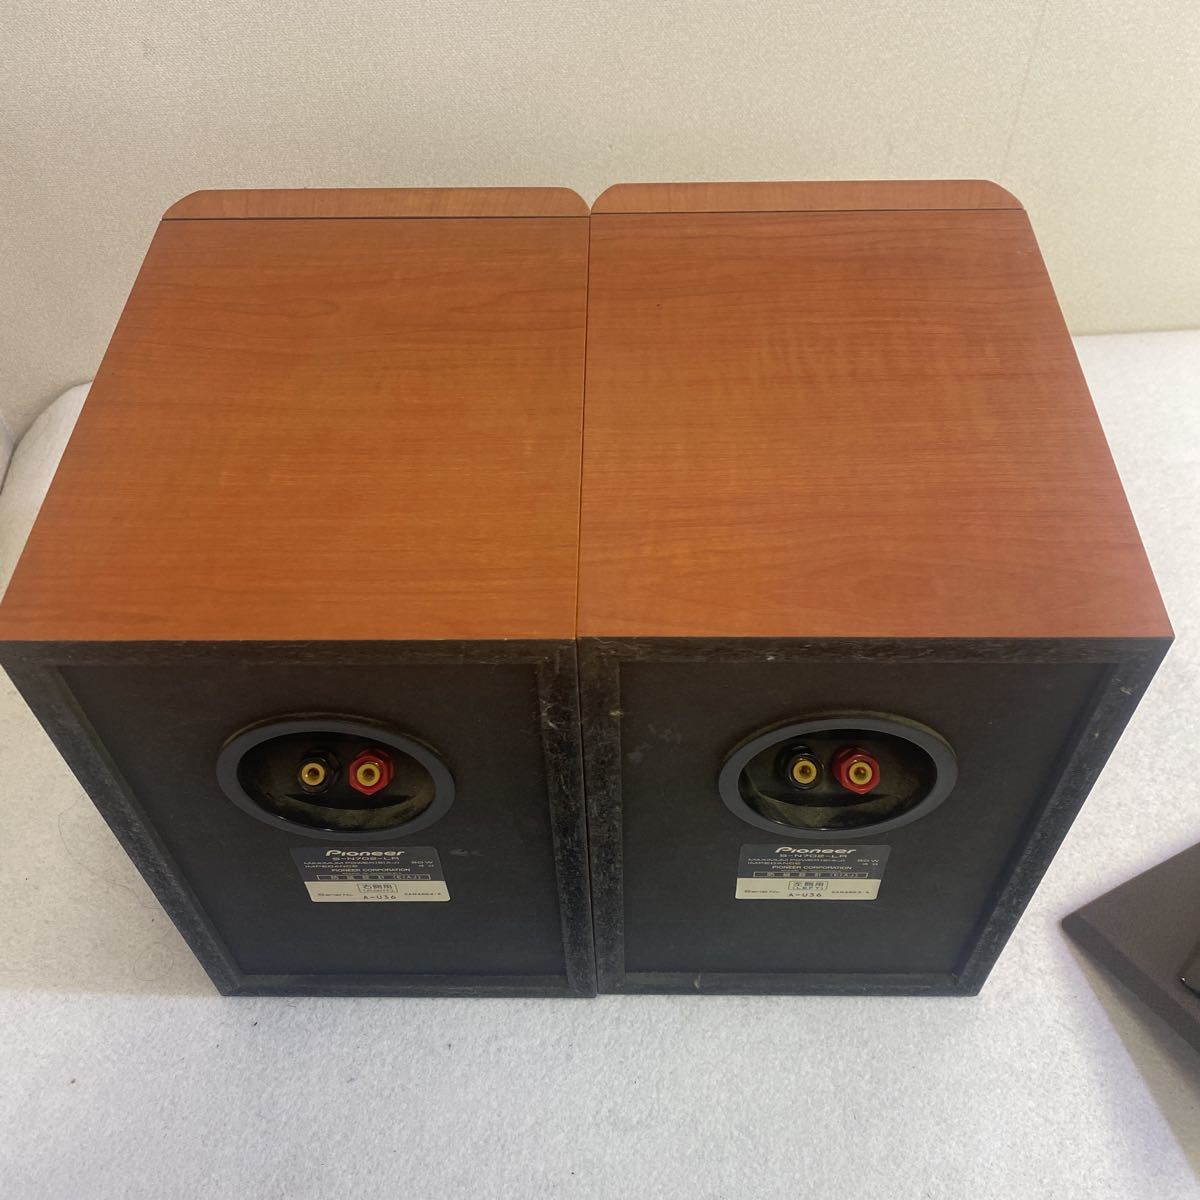 PIONEER Pioneer S-N702-LR speaker system used operation goods 